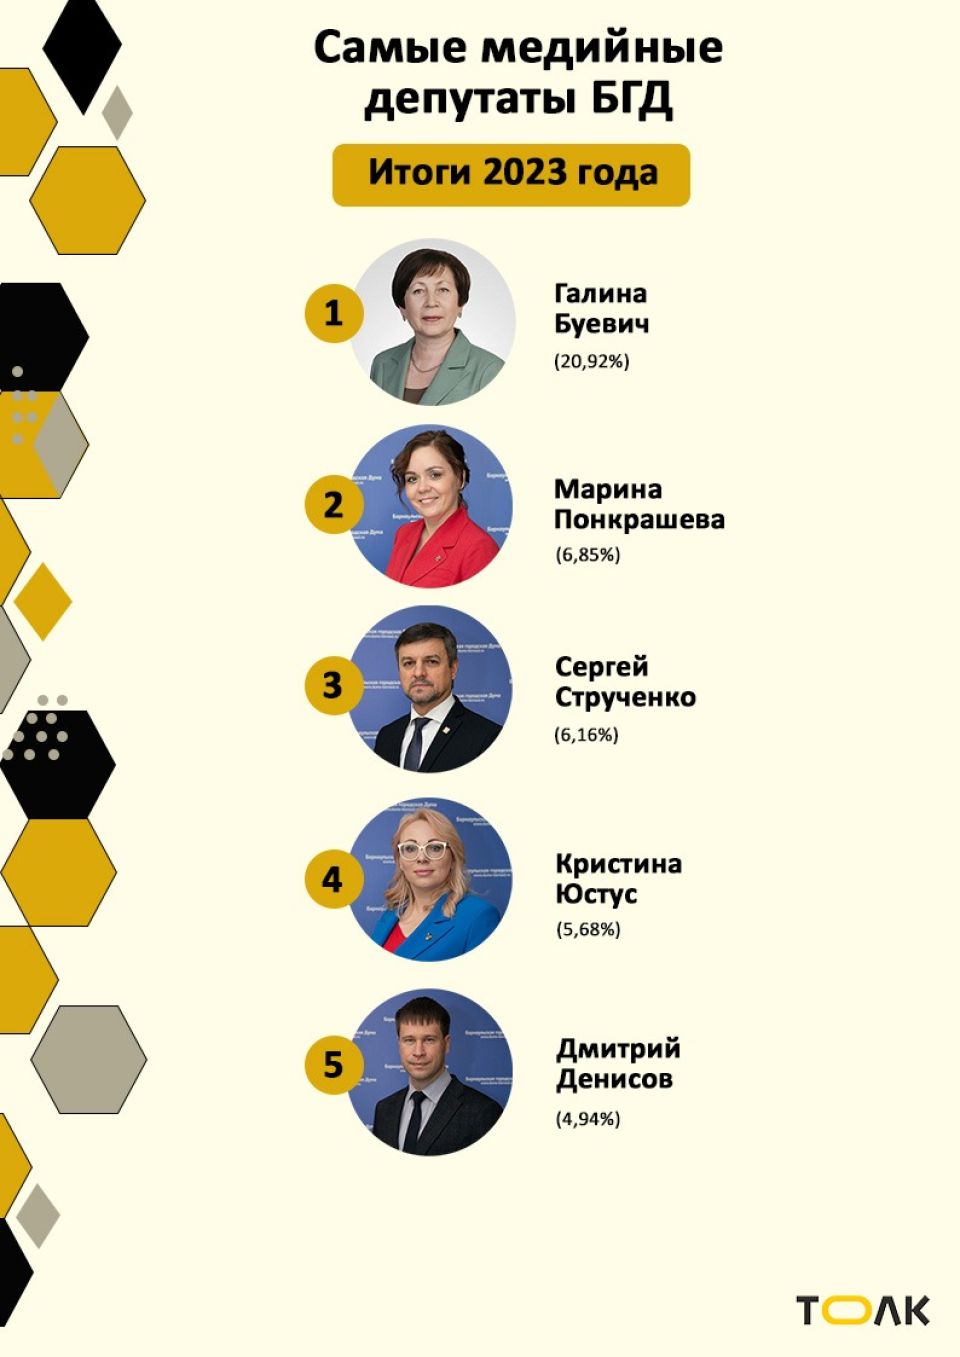 Рейтинг медийности депутатов БГД, итоги 2023 года